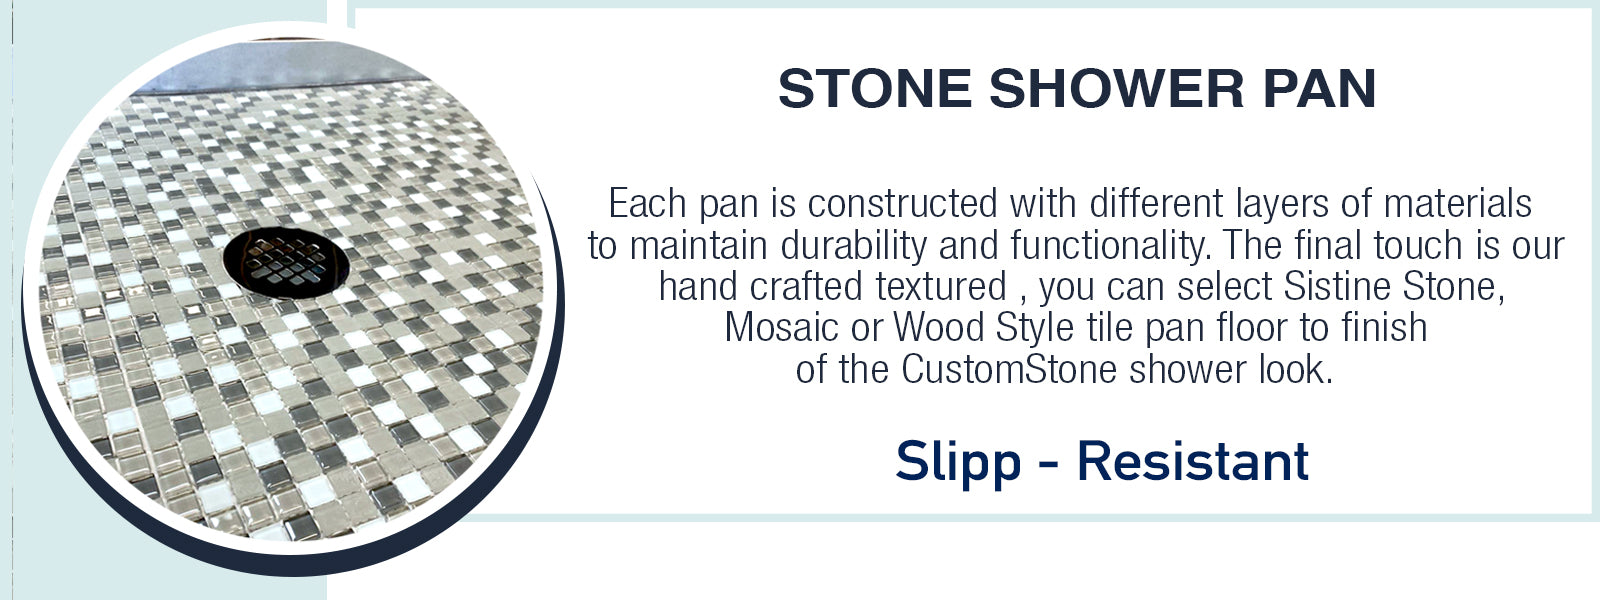 Sistine Stone Soap Dish – American Bath Factory